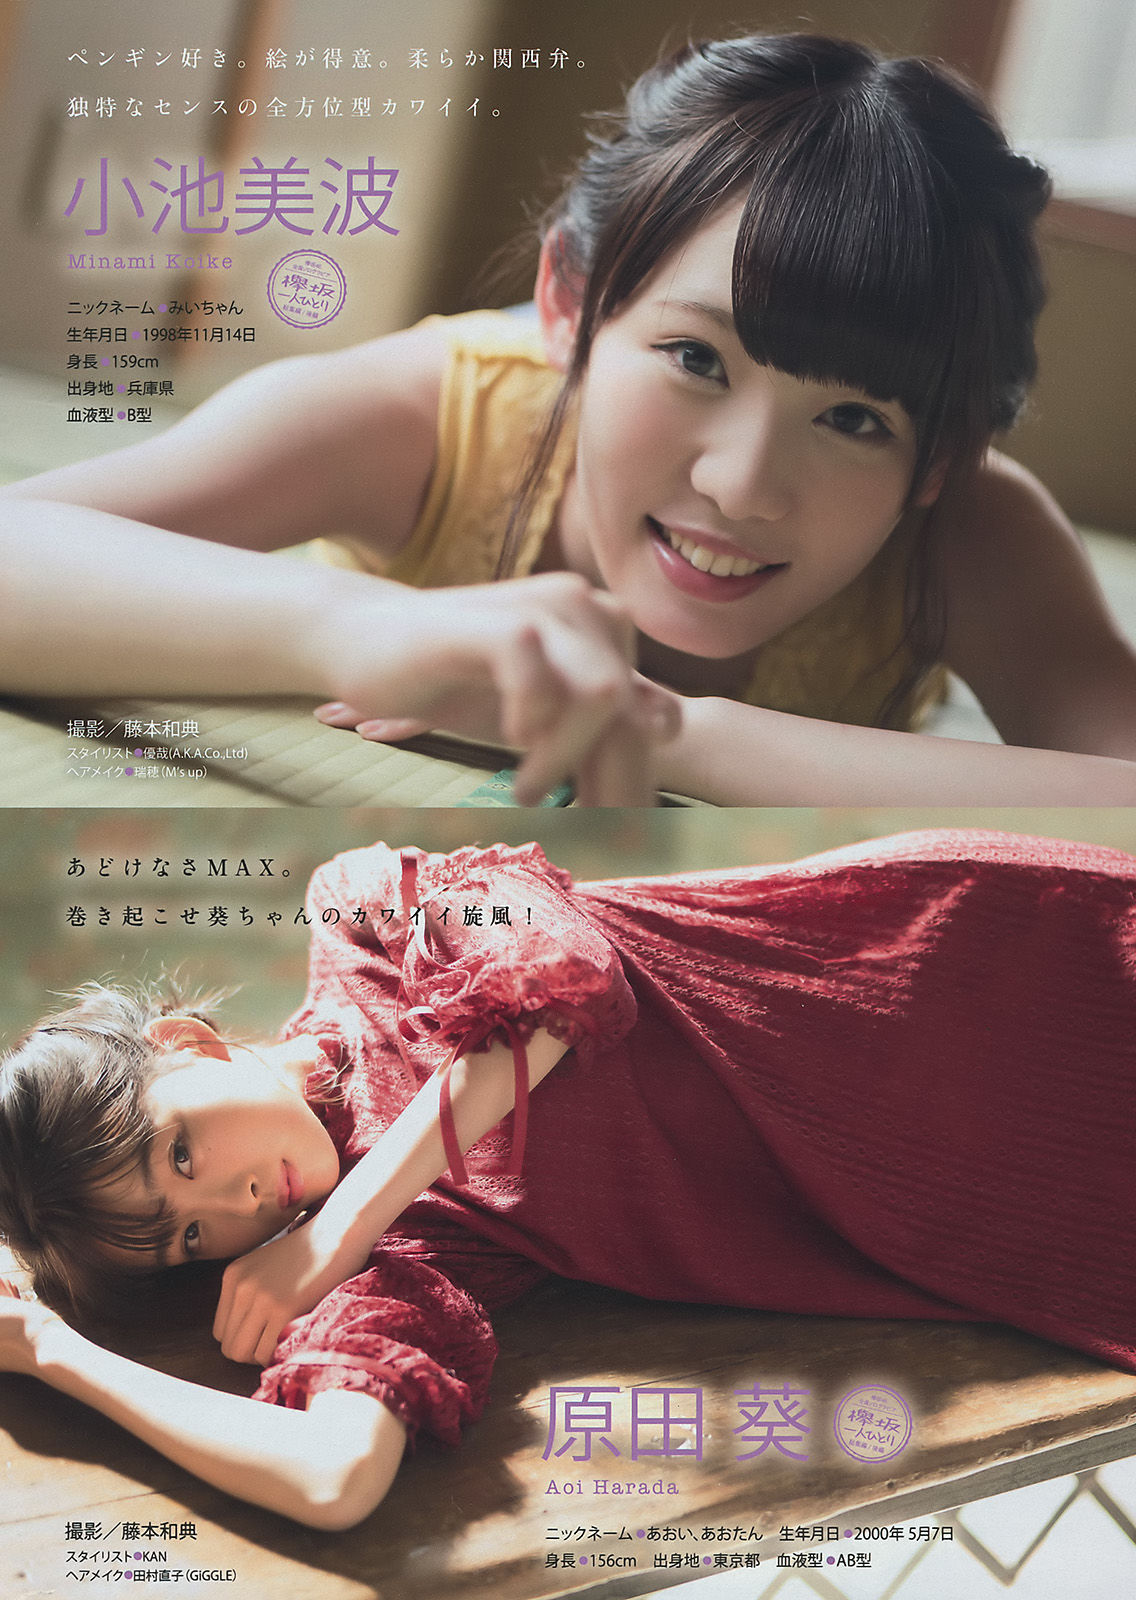 [Young Magazine] 2018年No.04-05 小倉優香 欅坂46/(14P)